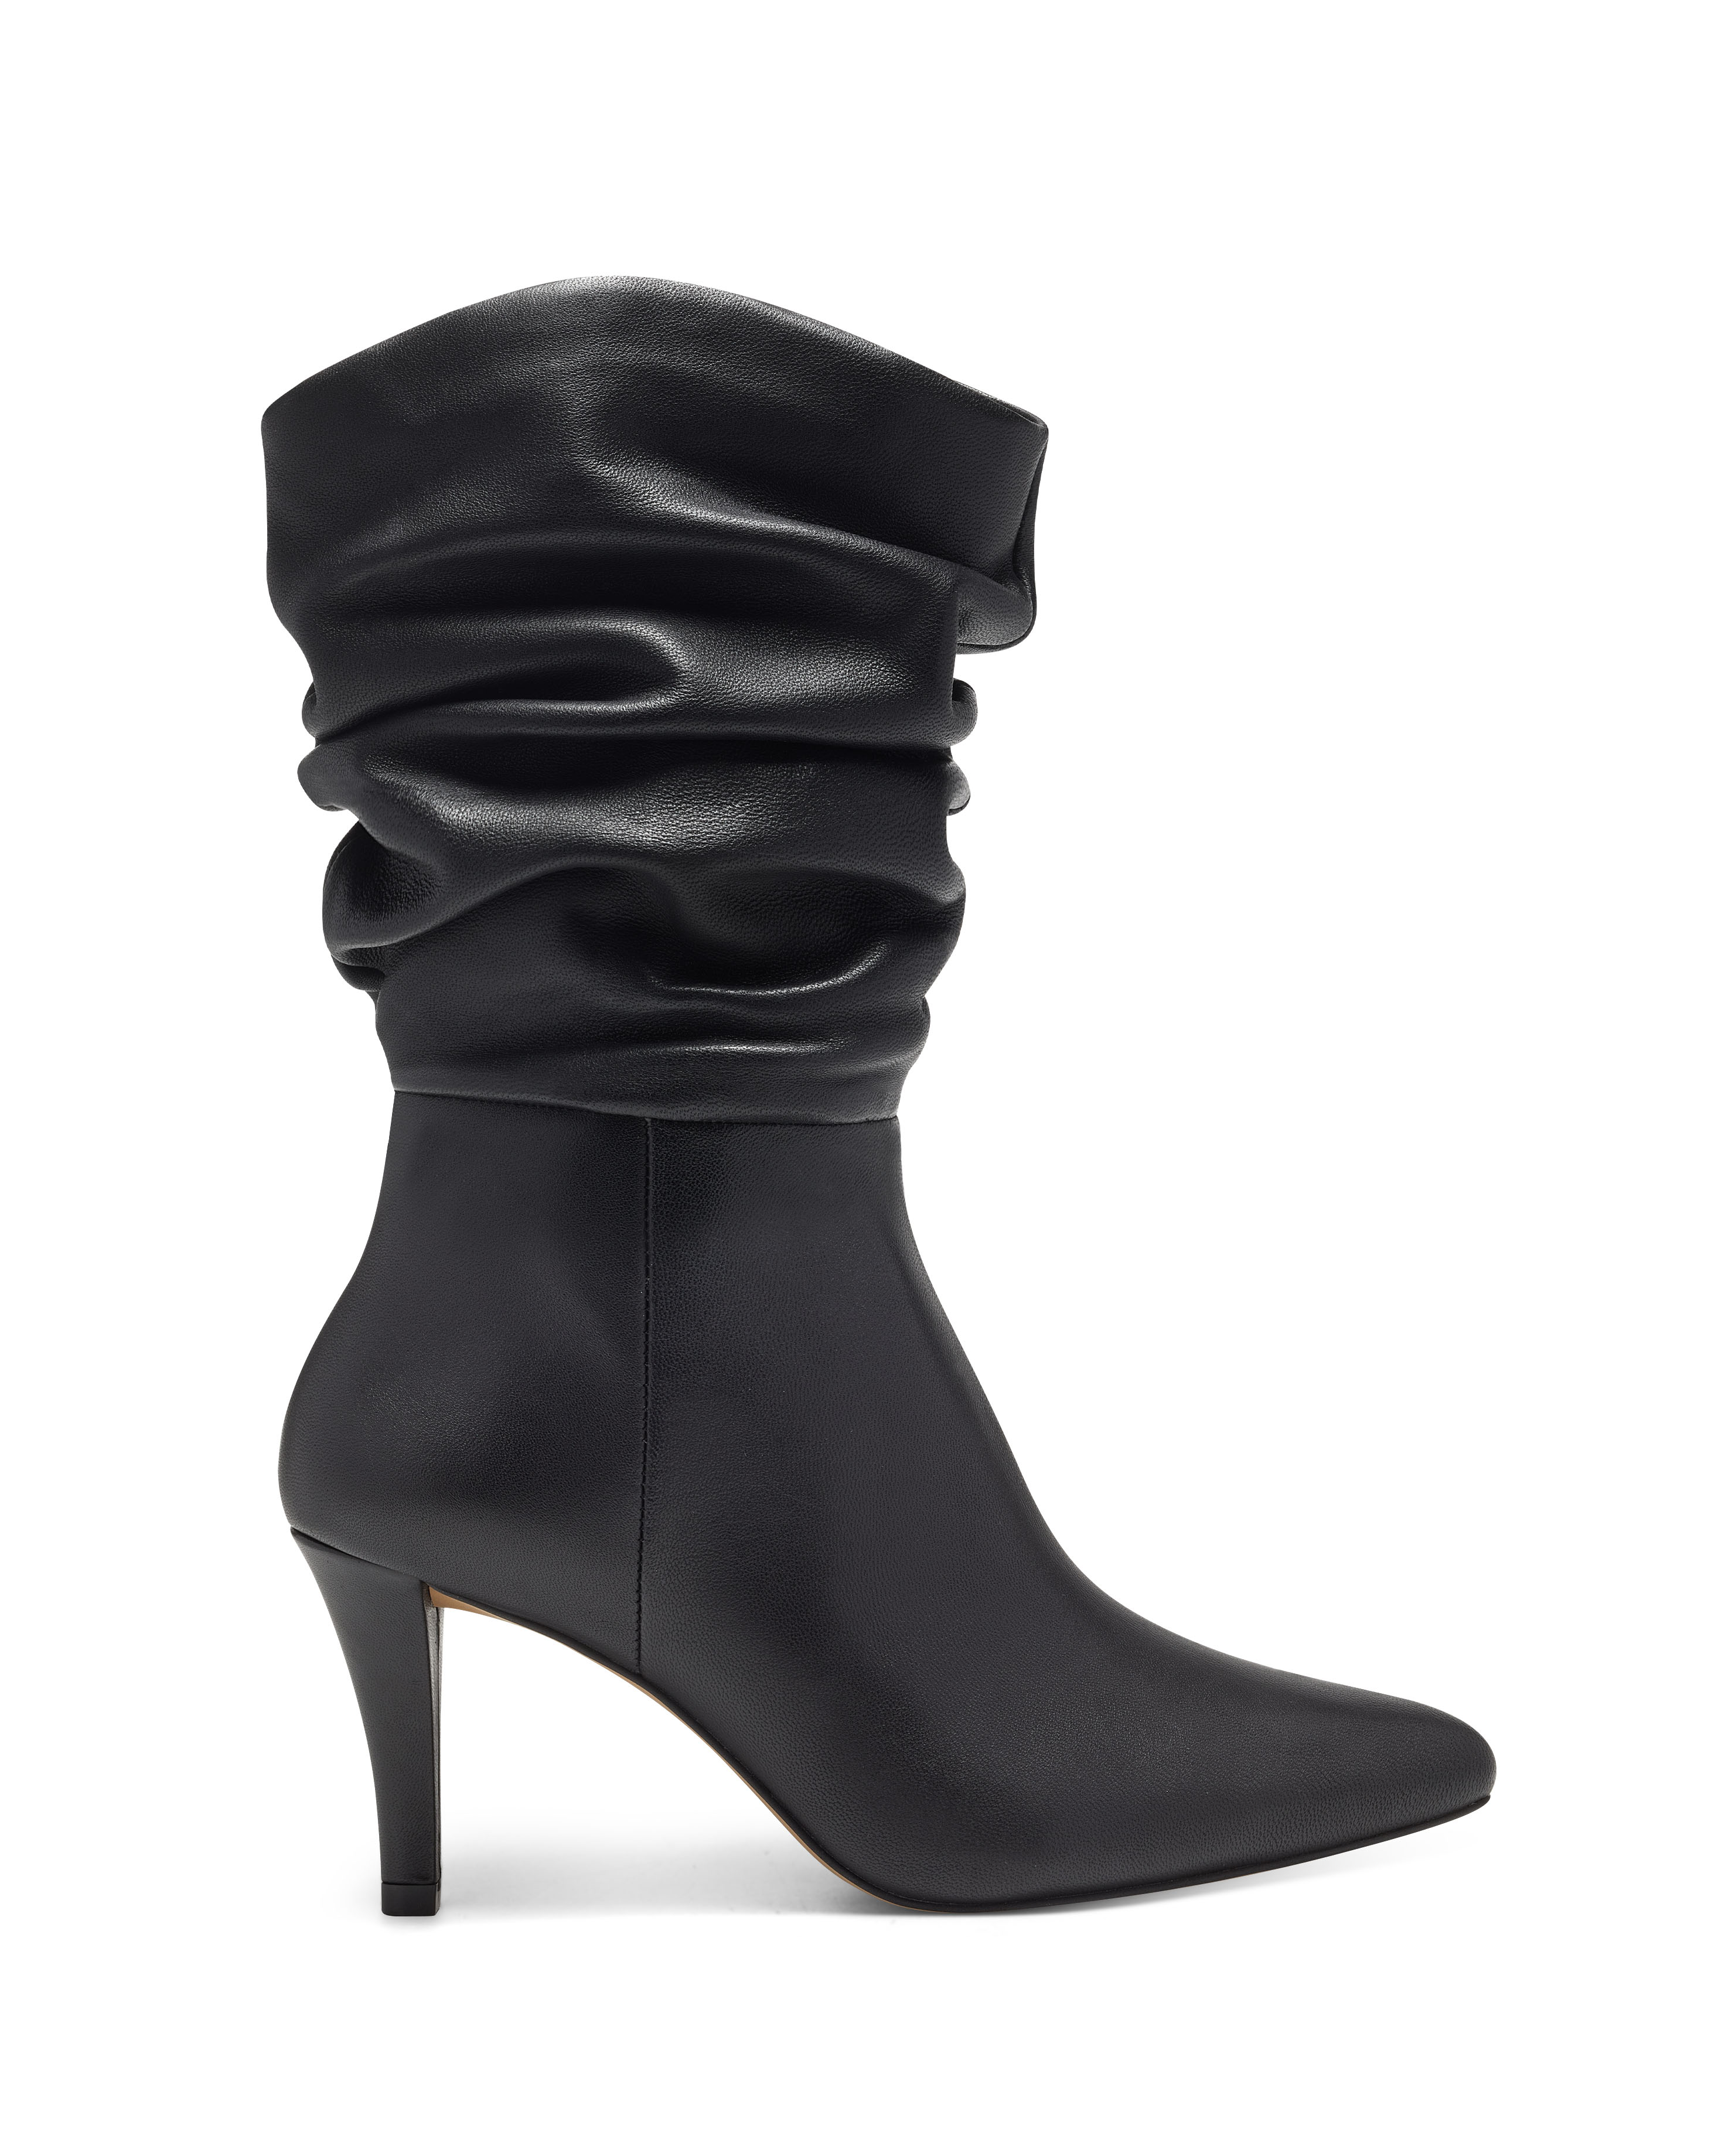 Women's Vince Camuto Sonbela Boots Size 6 Black